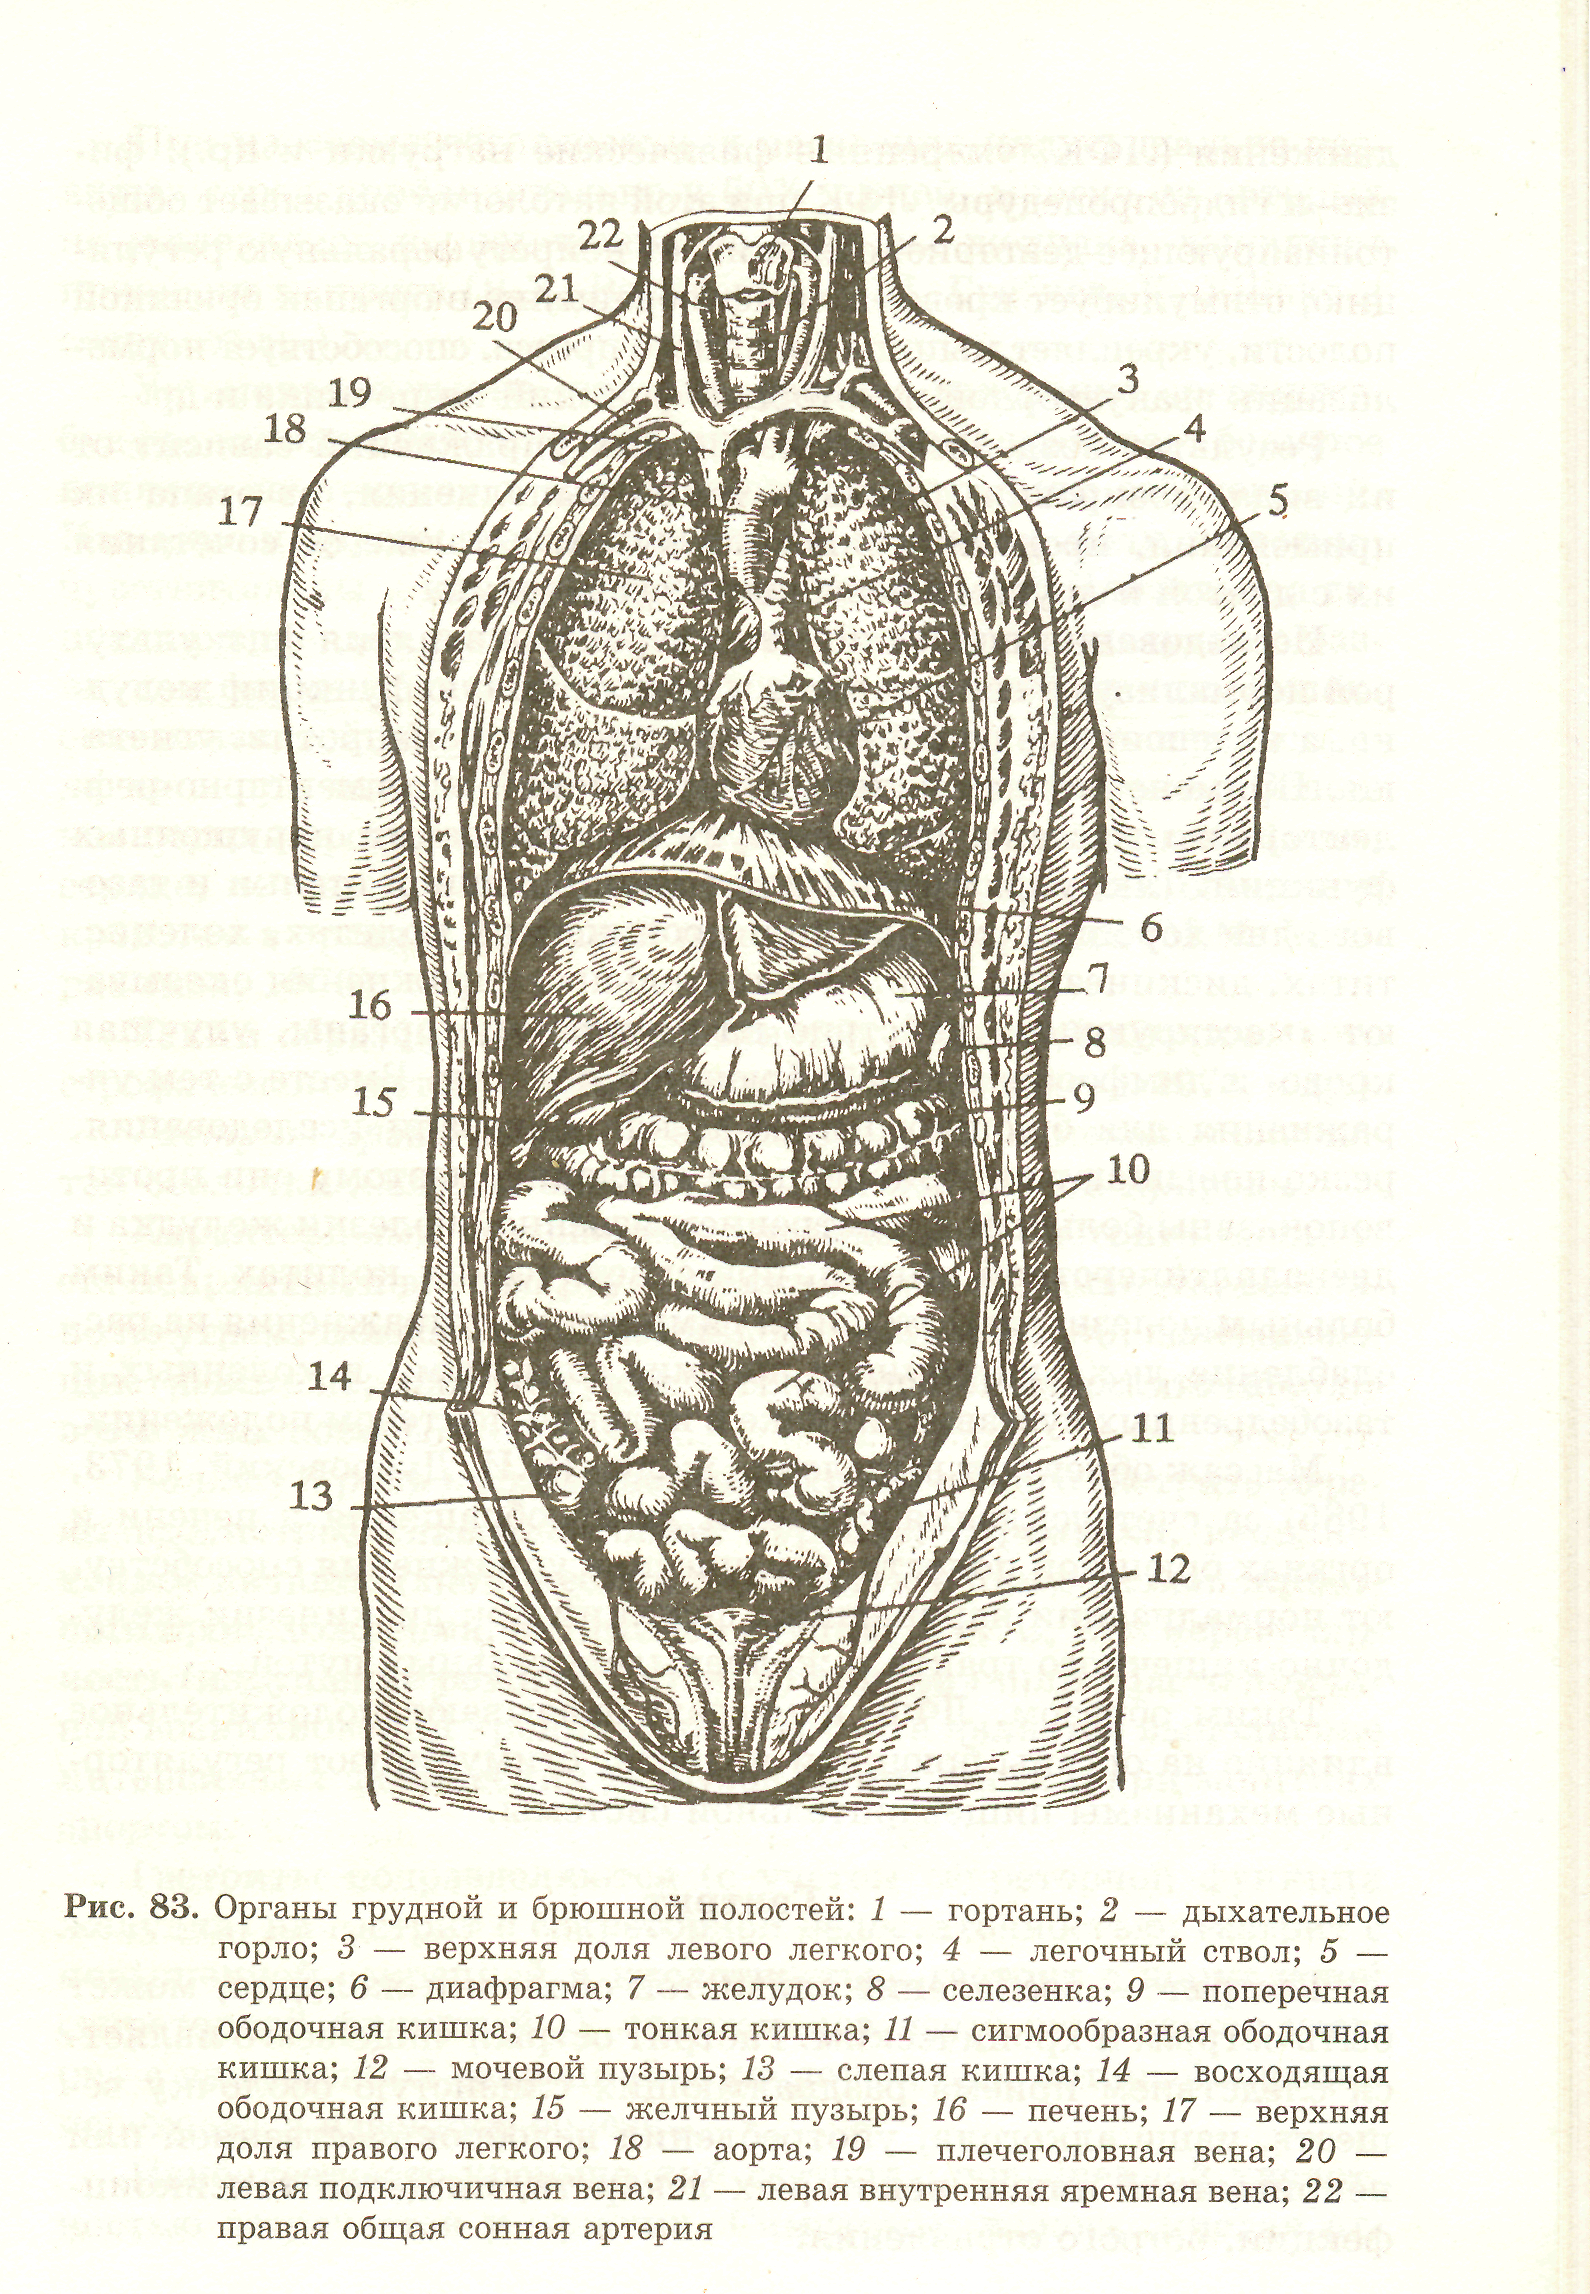 Анатомия внутренних органов брюшной полости